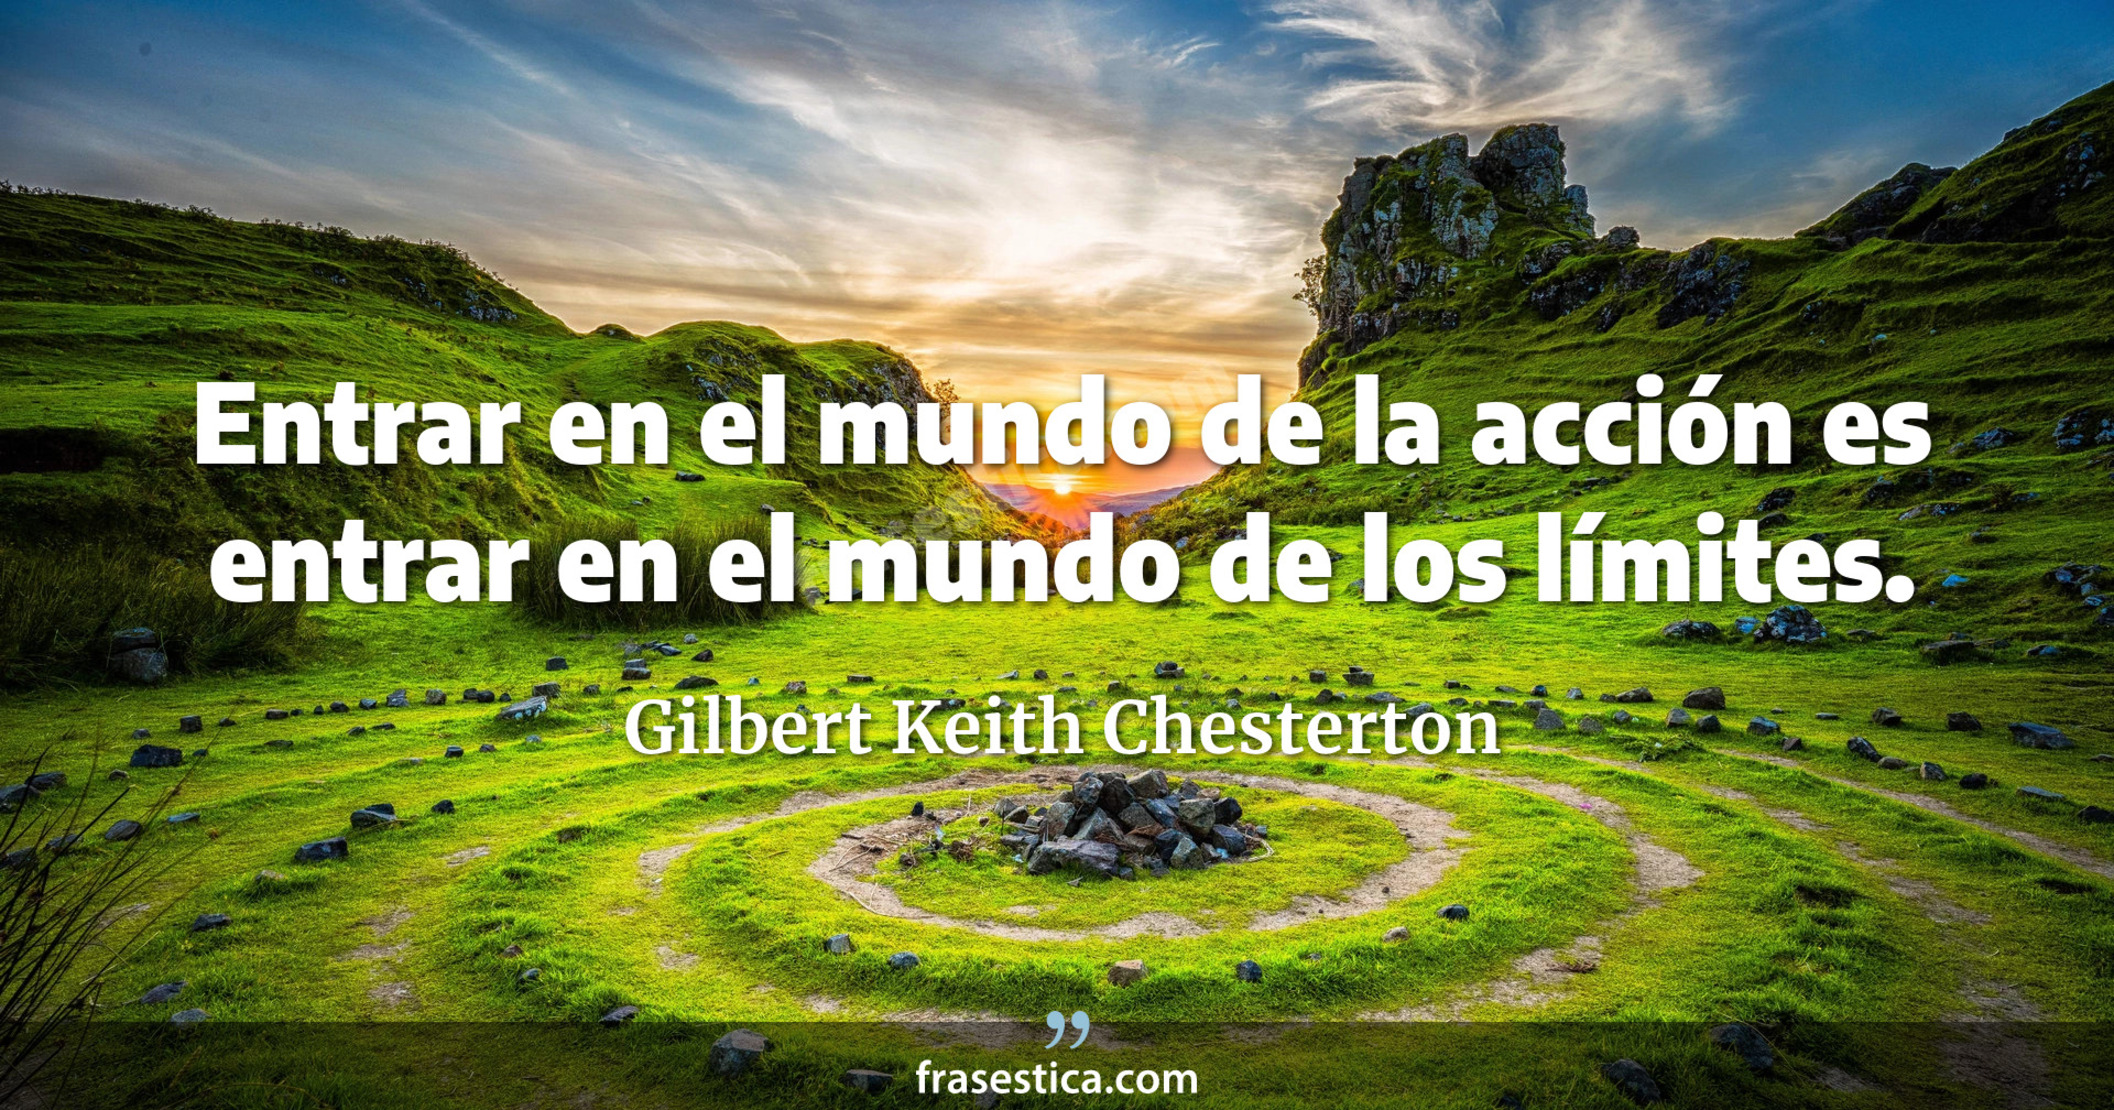 Entrar en el mundo de la acción es entrar en el mundo de los límites. - Gilbert Keith Chesterton